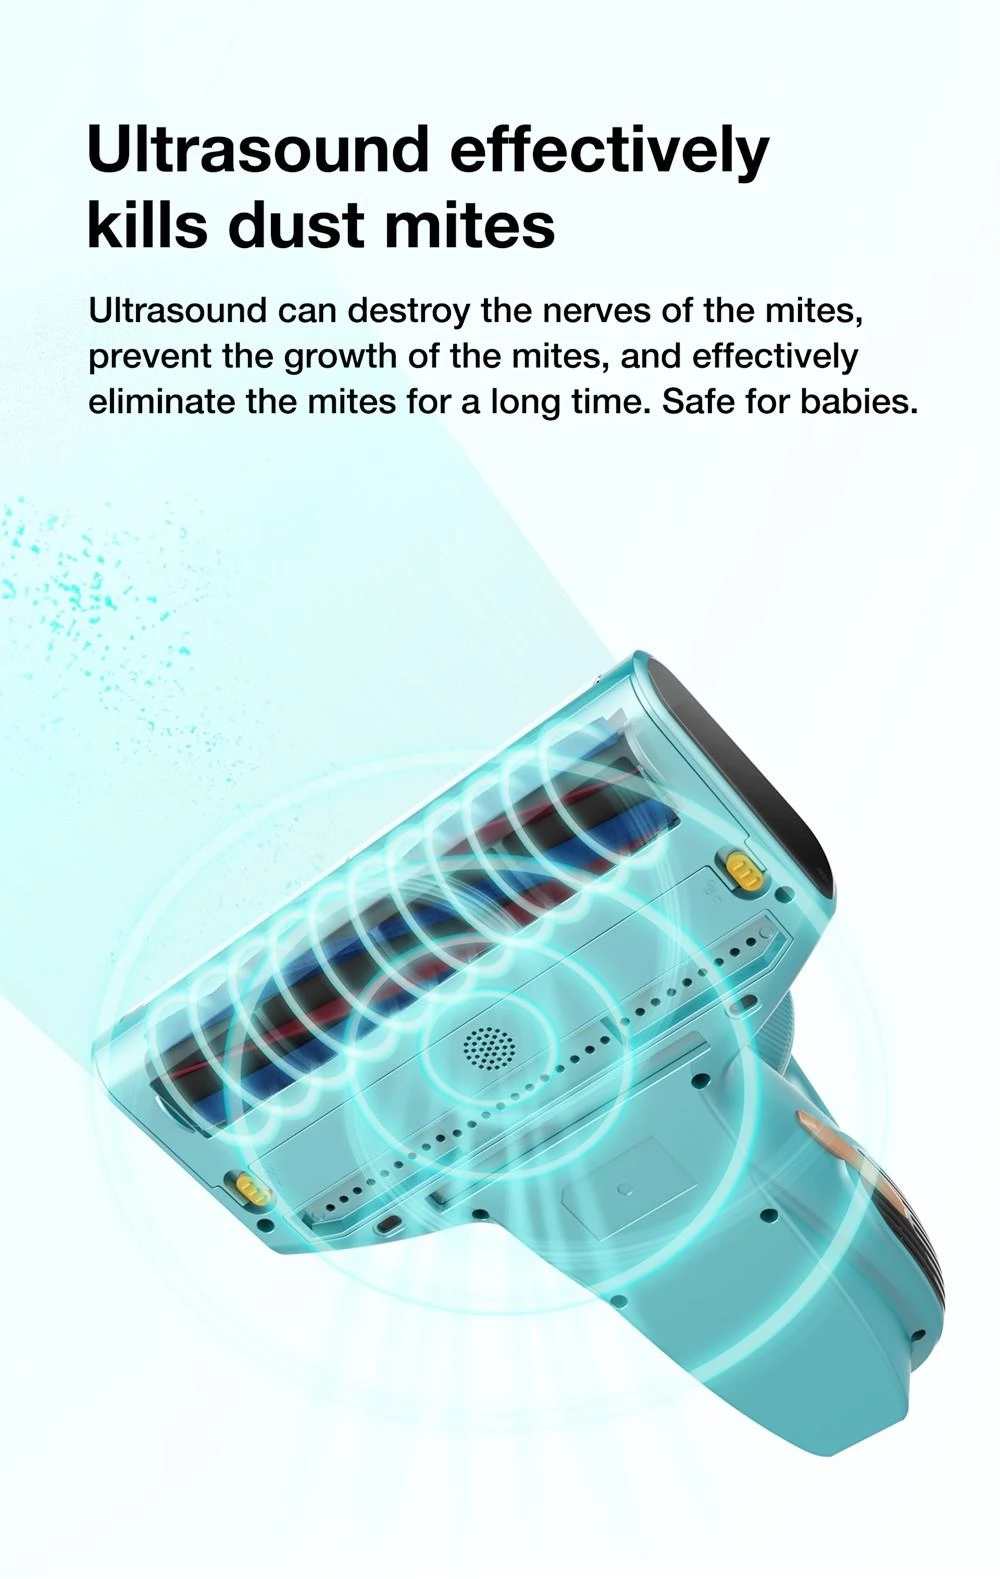 Jimmy BX7 Pro 700W Intelligenter Anti-Milben-Staubsauger mit Stauberkennung & Ultraschall-Saugleistung von 16 kPa